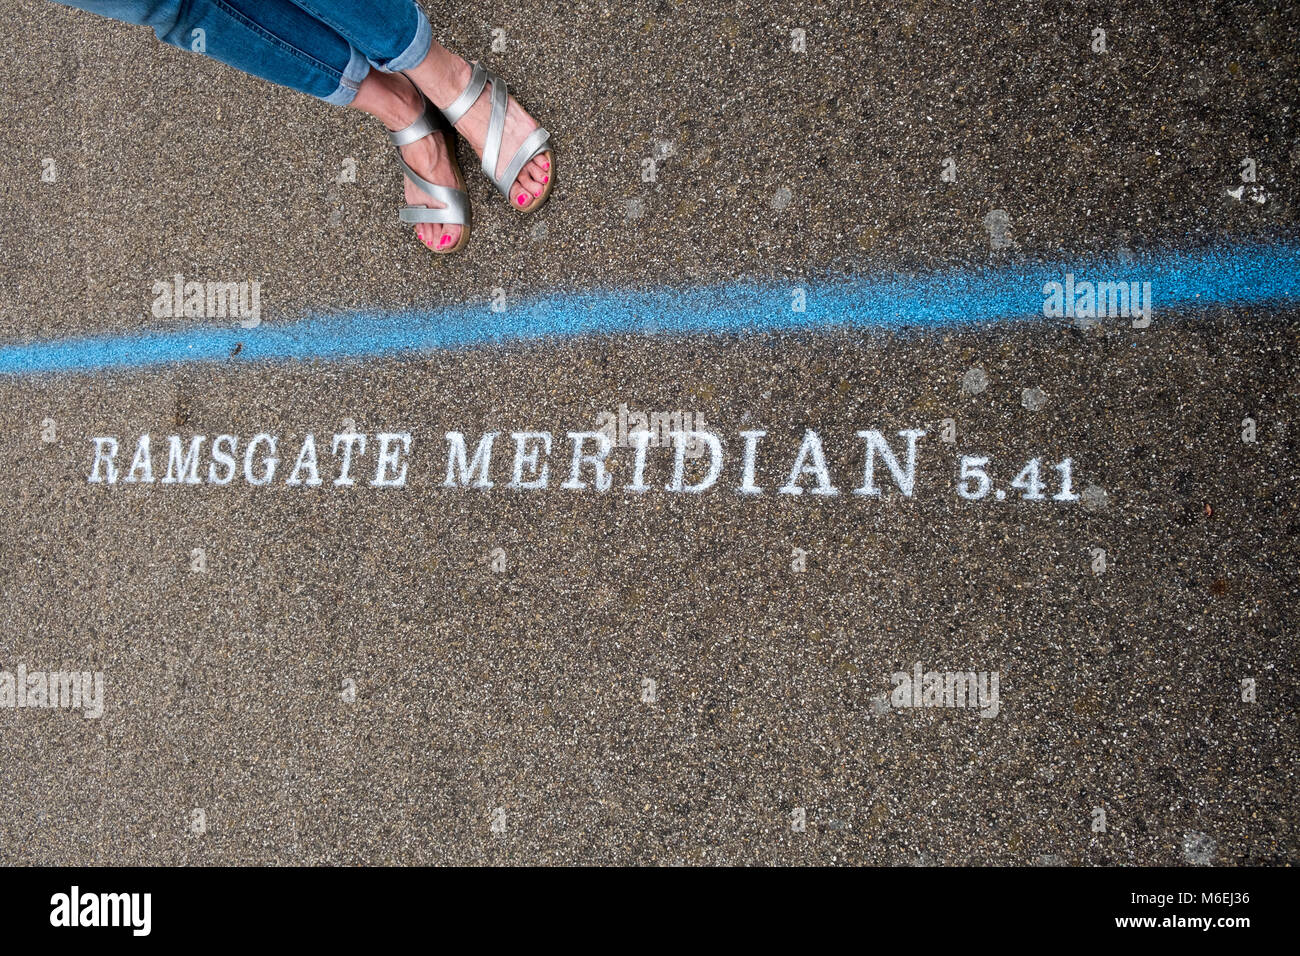 Para el año 2017 Festival de Ramsgate artista Theresa Smith, celebra que la ciudad tiene su propio Meridiano - 5 minutos y 41 segundos por delante de la Hora Media de Greenwich. Foto de stock